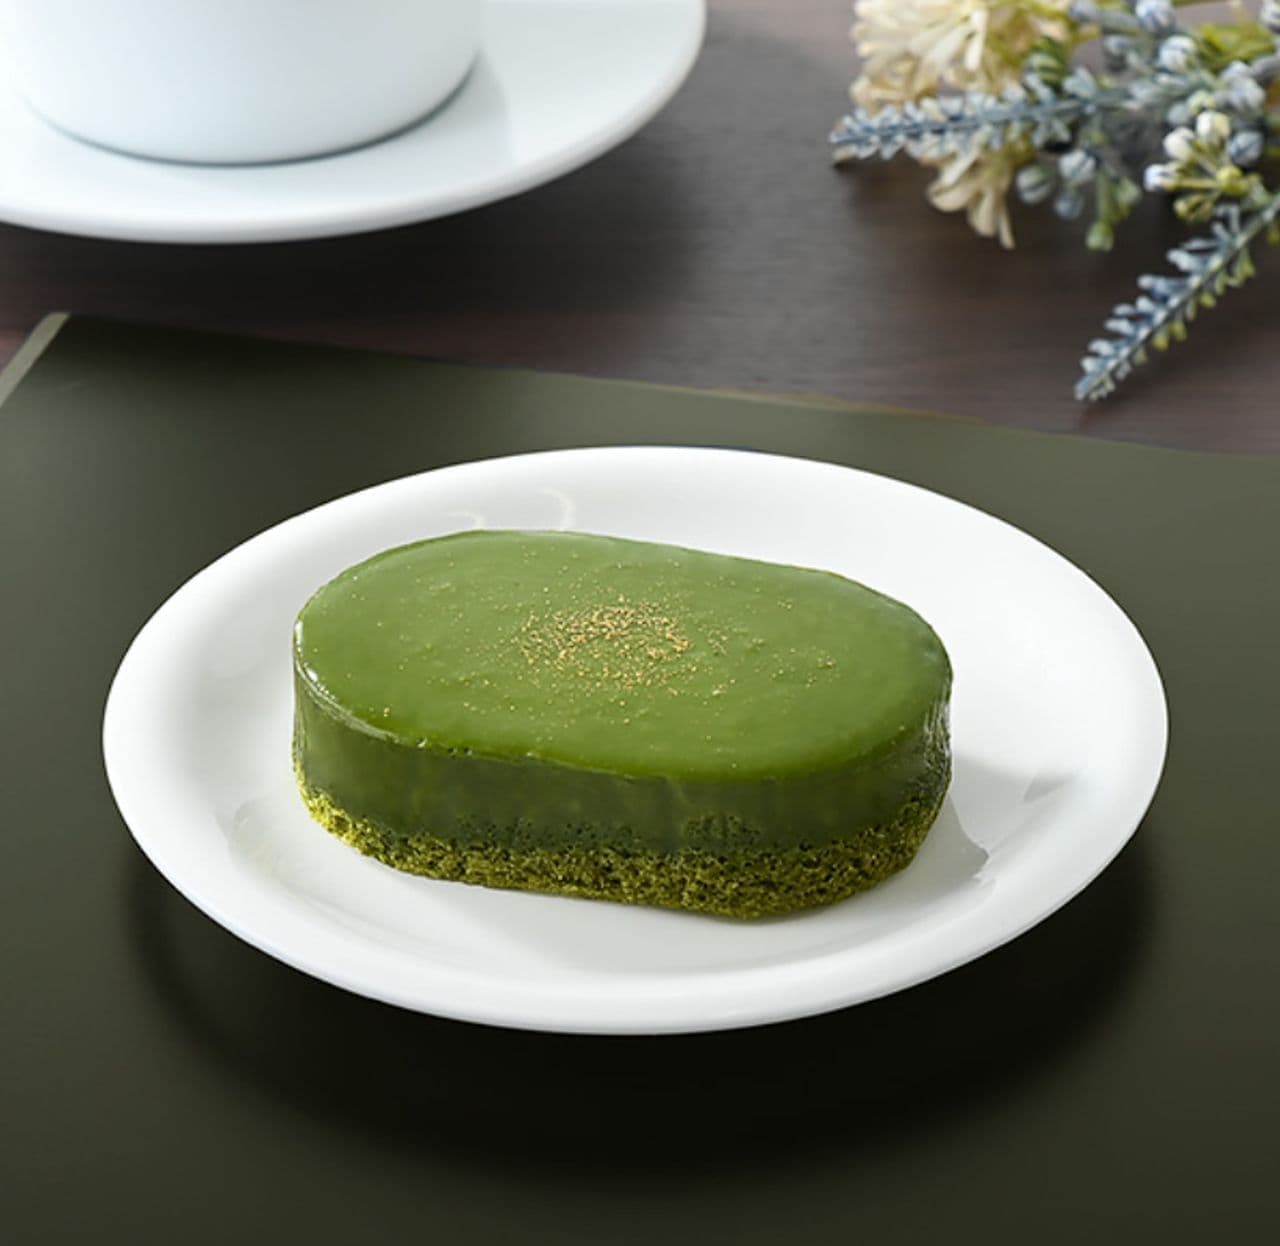 FamilyMart "Dark Uji green tea terrine